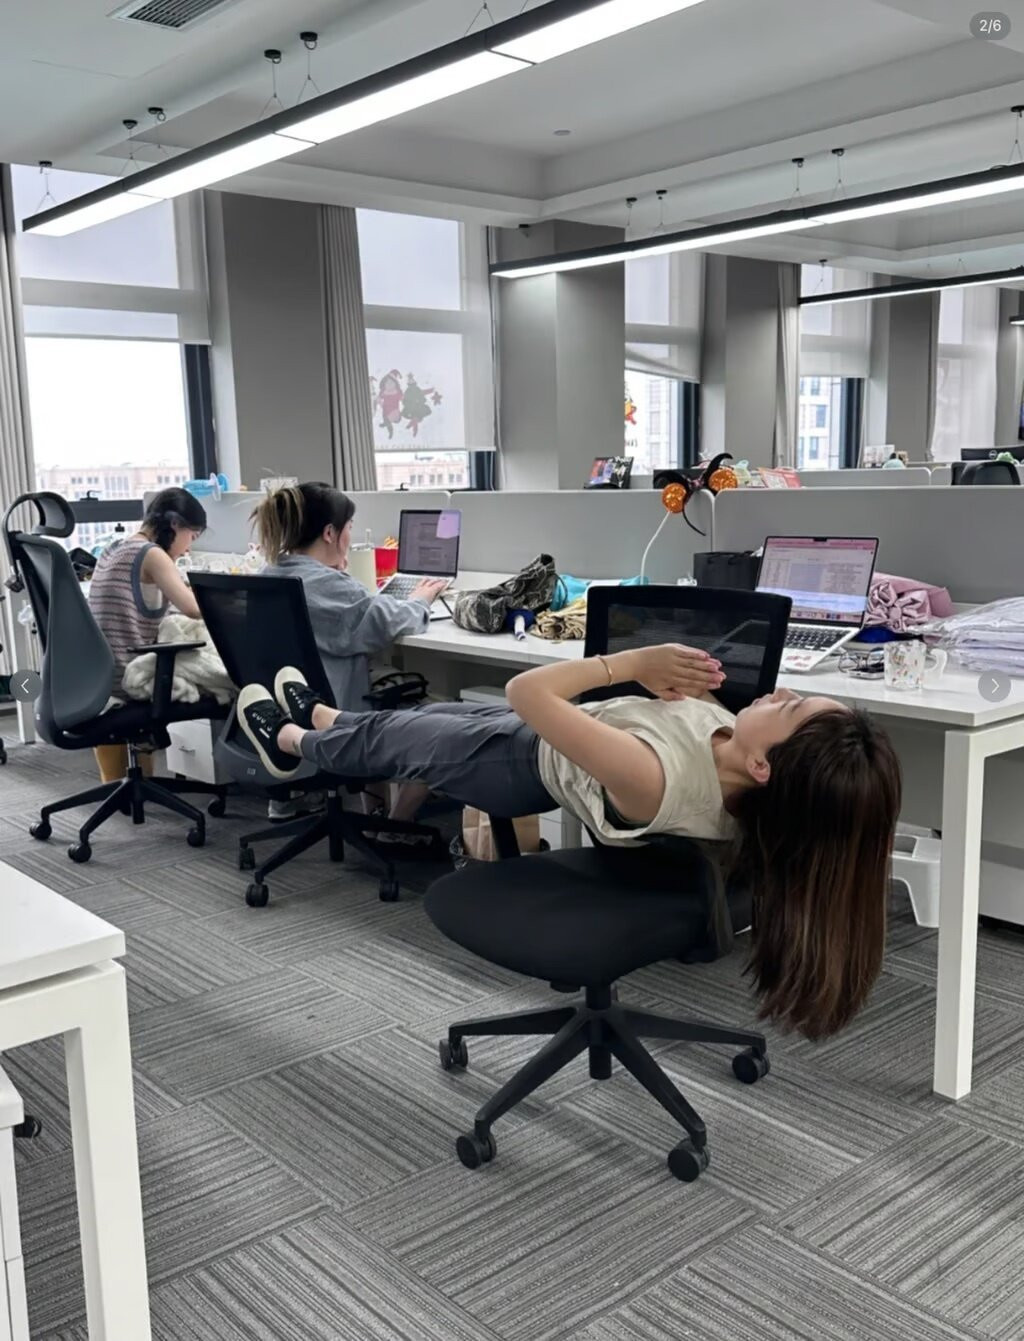 Ngay cả ghế văn phòng cũngđược sử dụng để thực hiện bài tập. (Ảnh: Xiaohongshu)